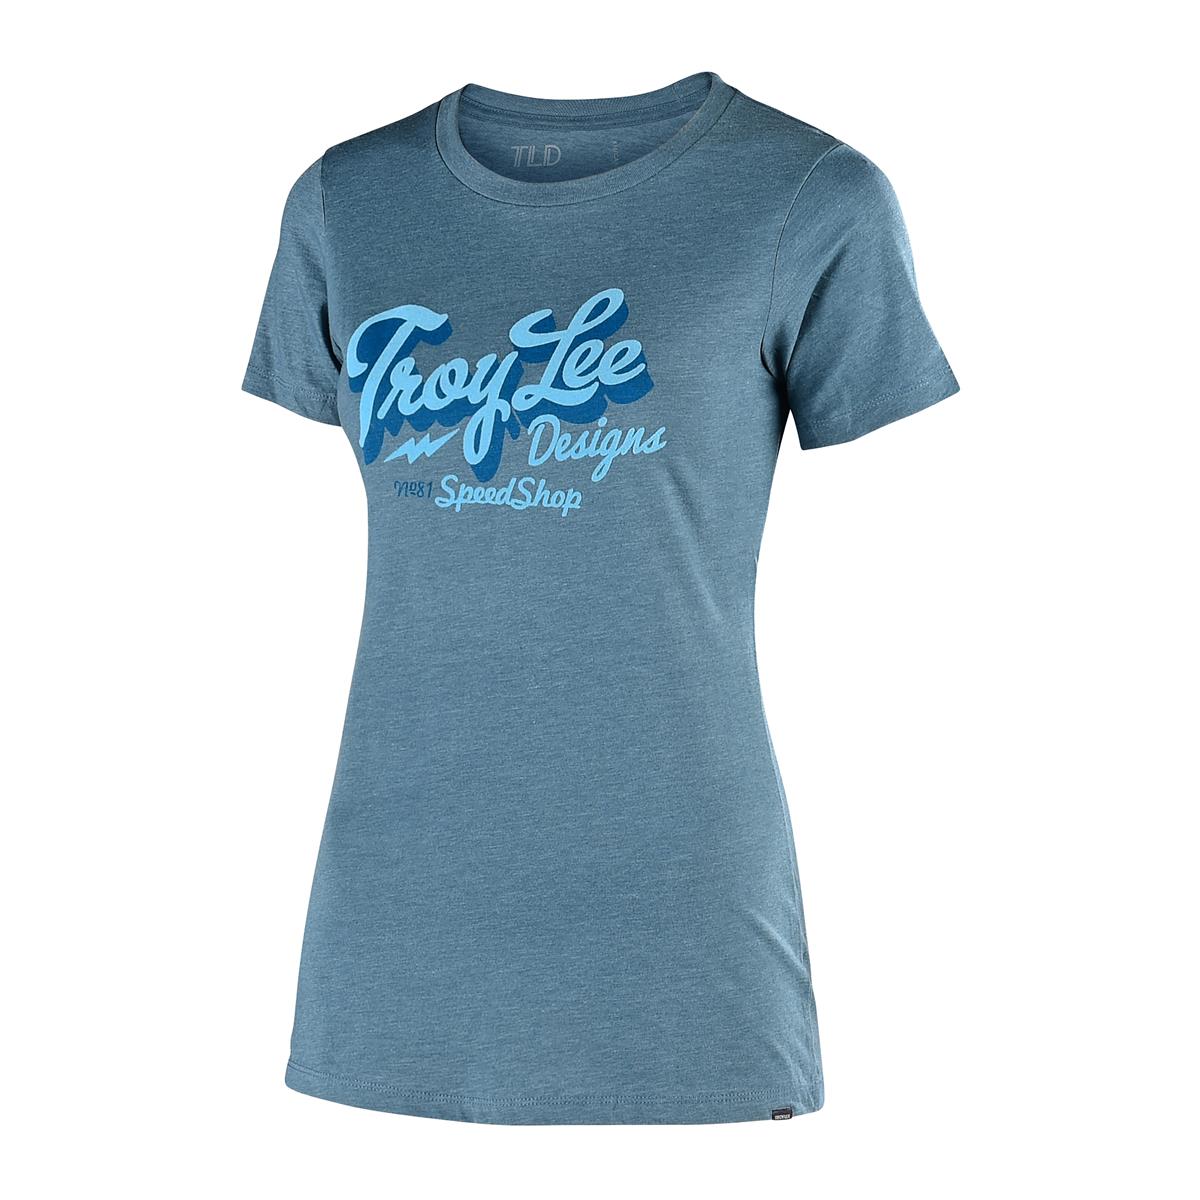 Troy Lee Designs Femme T-Shirt Vintage Speed Shop Indigo